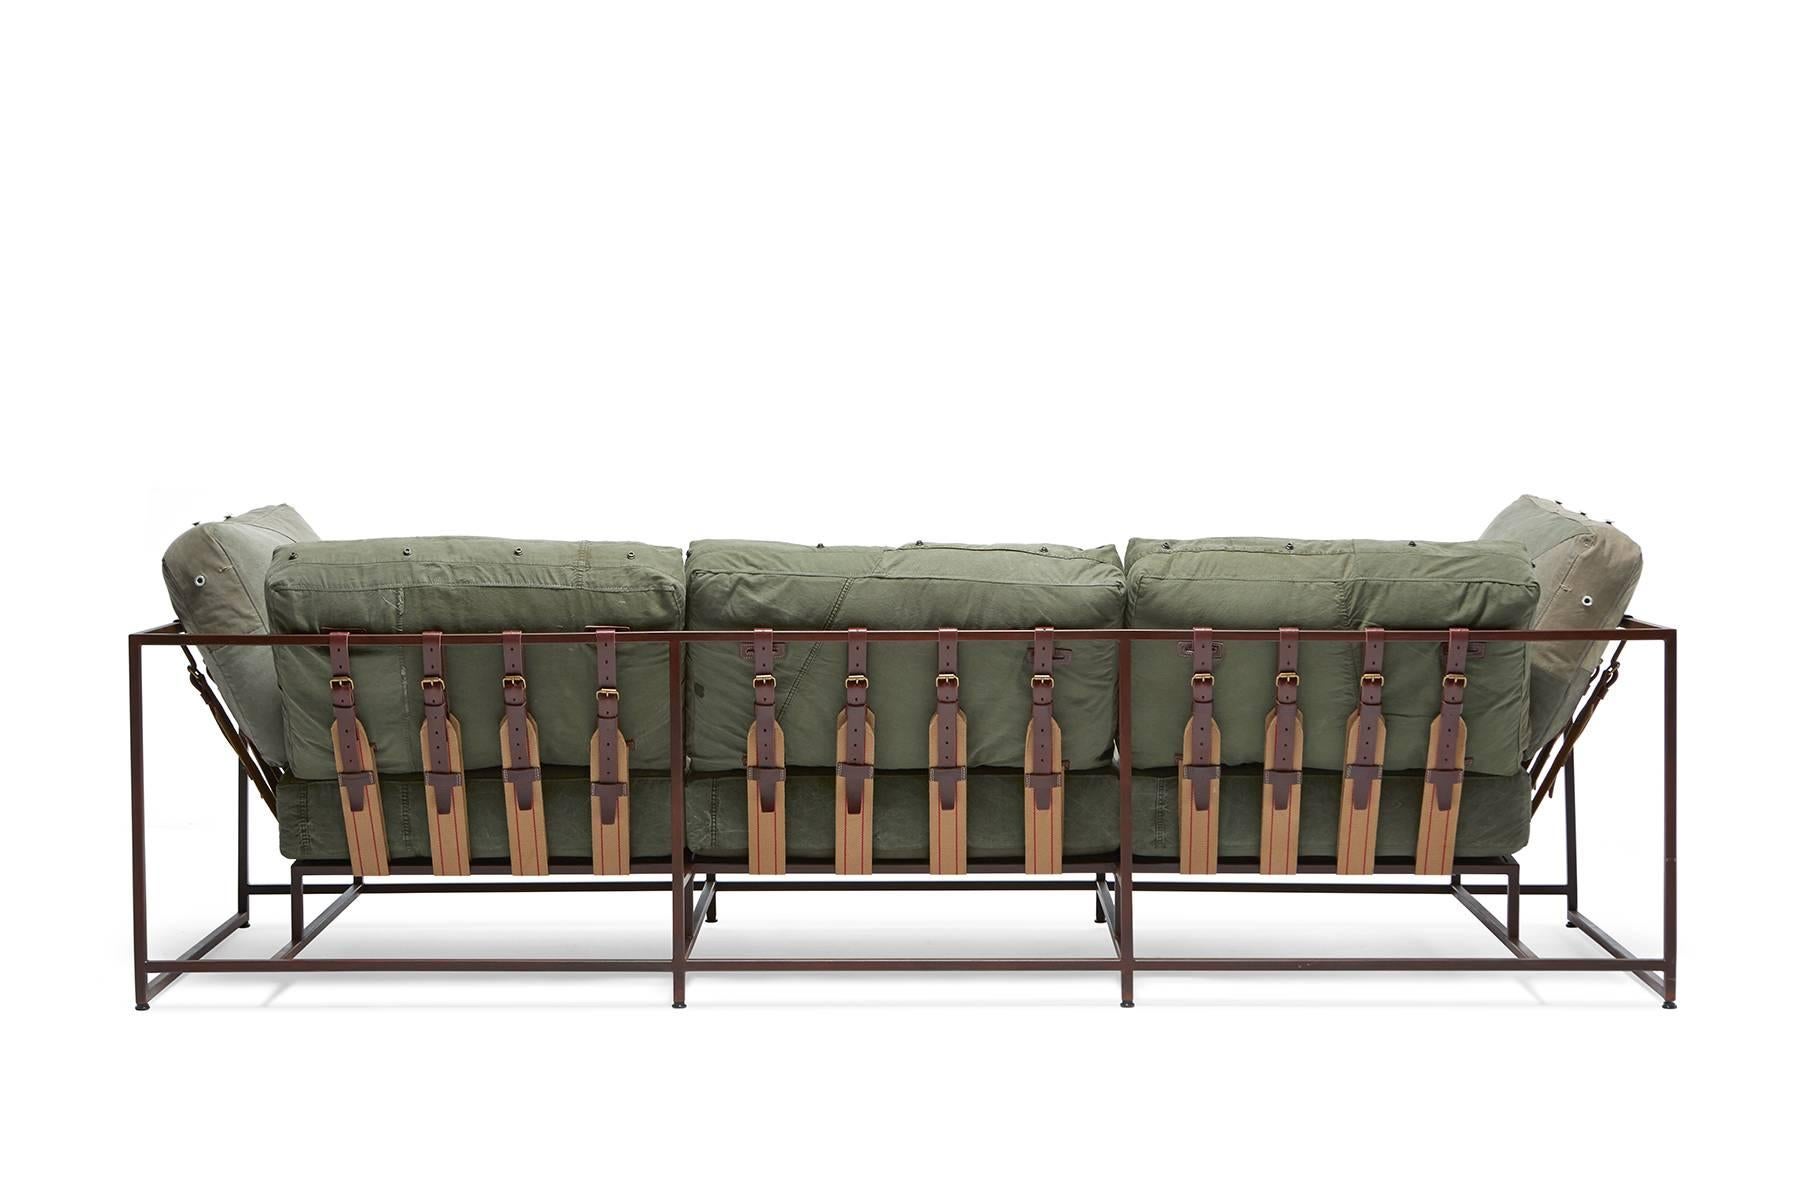 Dieses 2011 entworfene Sofa war das erste Stück der Inheritance Collection von Stephen Kenn. Ausgehend von der Neugierde, wie Möbel konstruiert wurden, ist die Kollektion das Ergebnis einer Neuinterpretation typischer Polstersitze.

Seit dem ersten